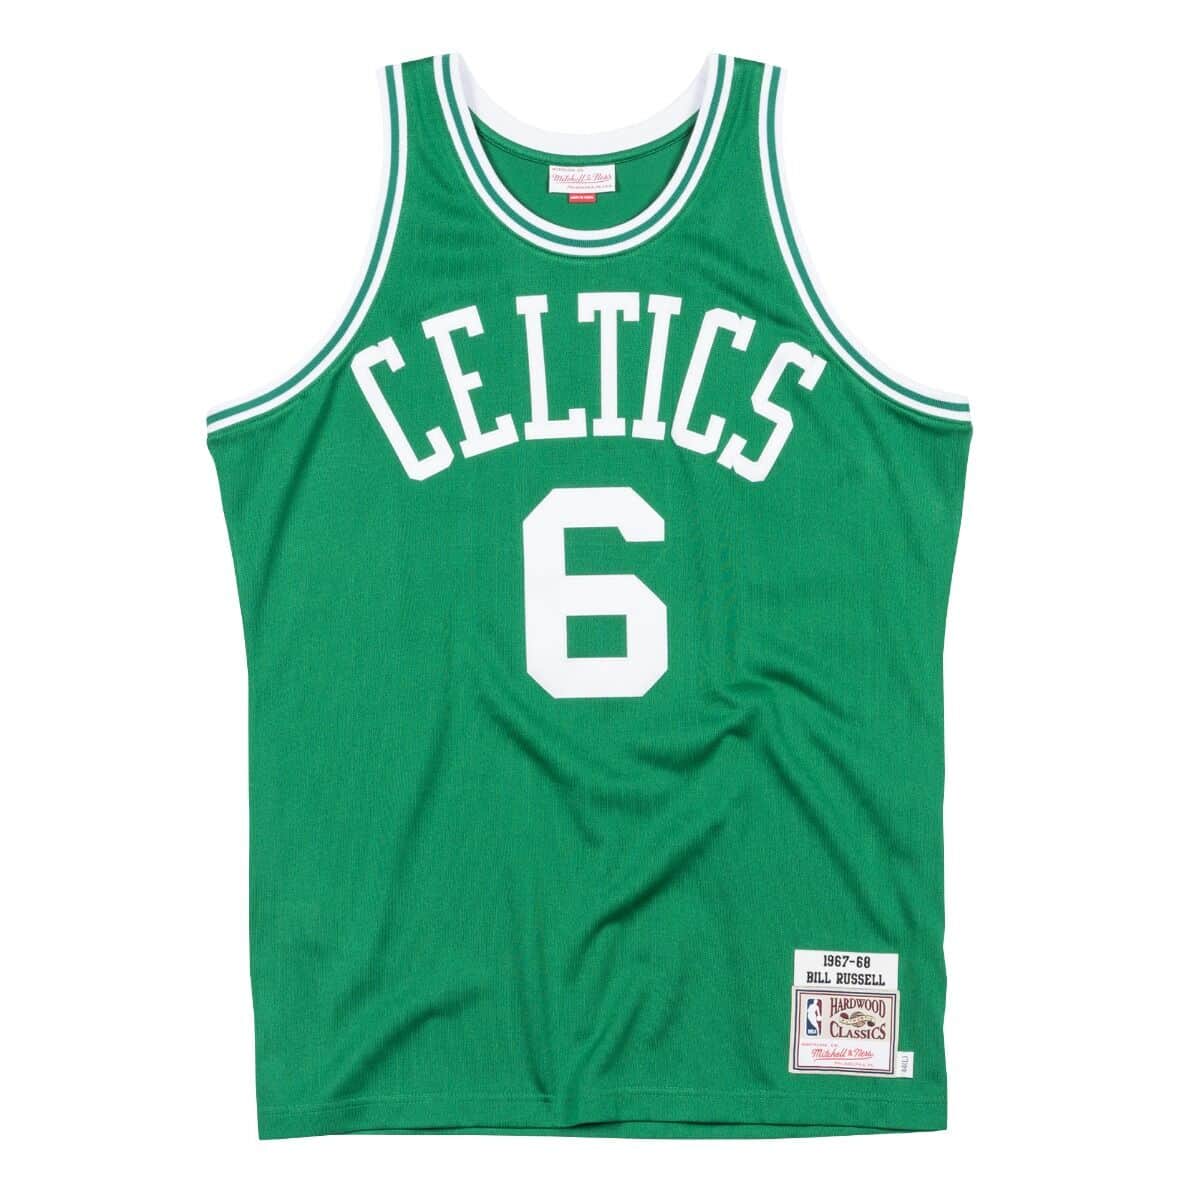 Bill Russell 1967-68 Road Boston Celtics Jersey